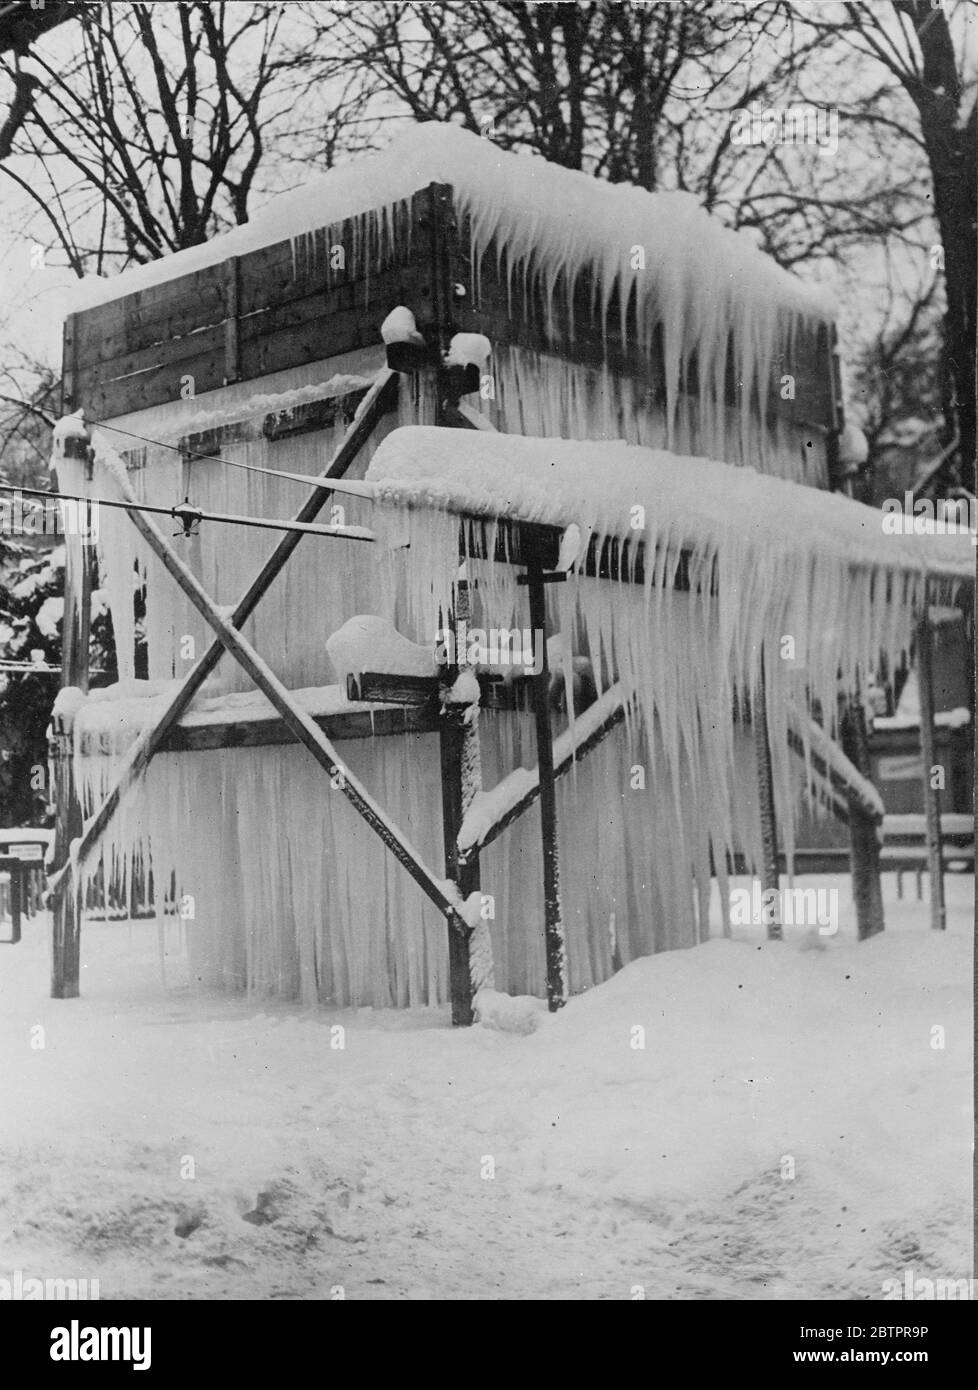 Tempio di ghiaccio. Le cicette sospese dal tetto a terra rendono questa capanna di legno quasi bella in un villaggio dell'Austria, ora vivendo uno dei peggiori inverni in archivio. 12 gennaio 1938 Foto Stock